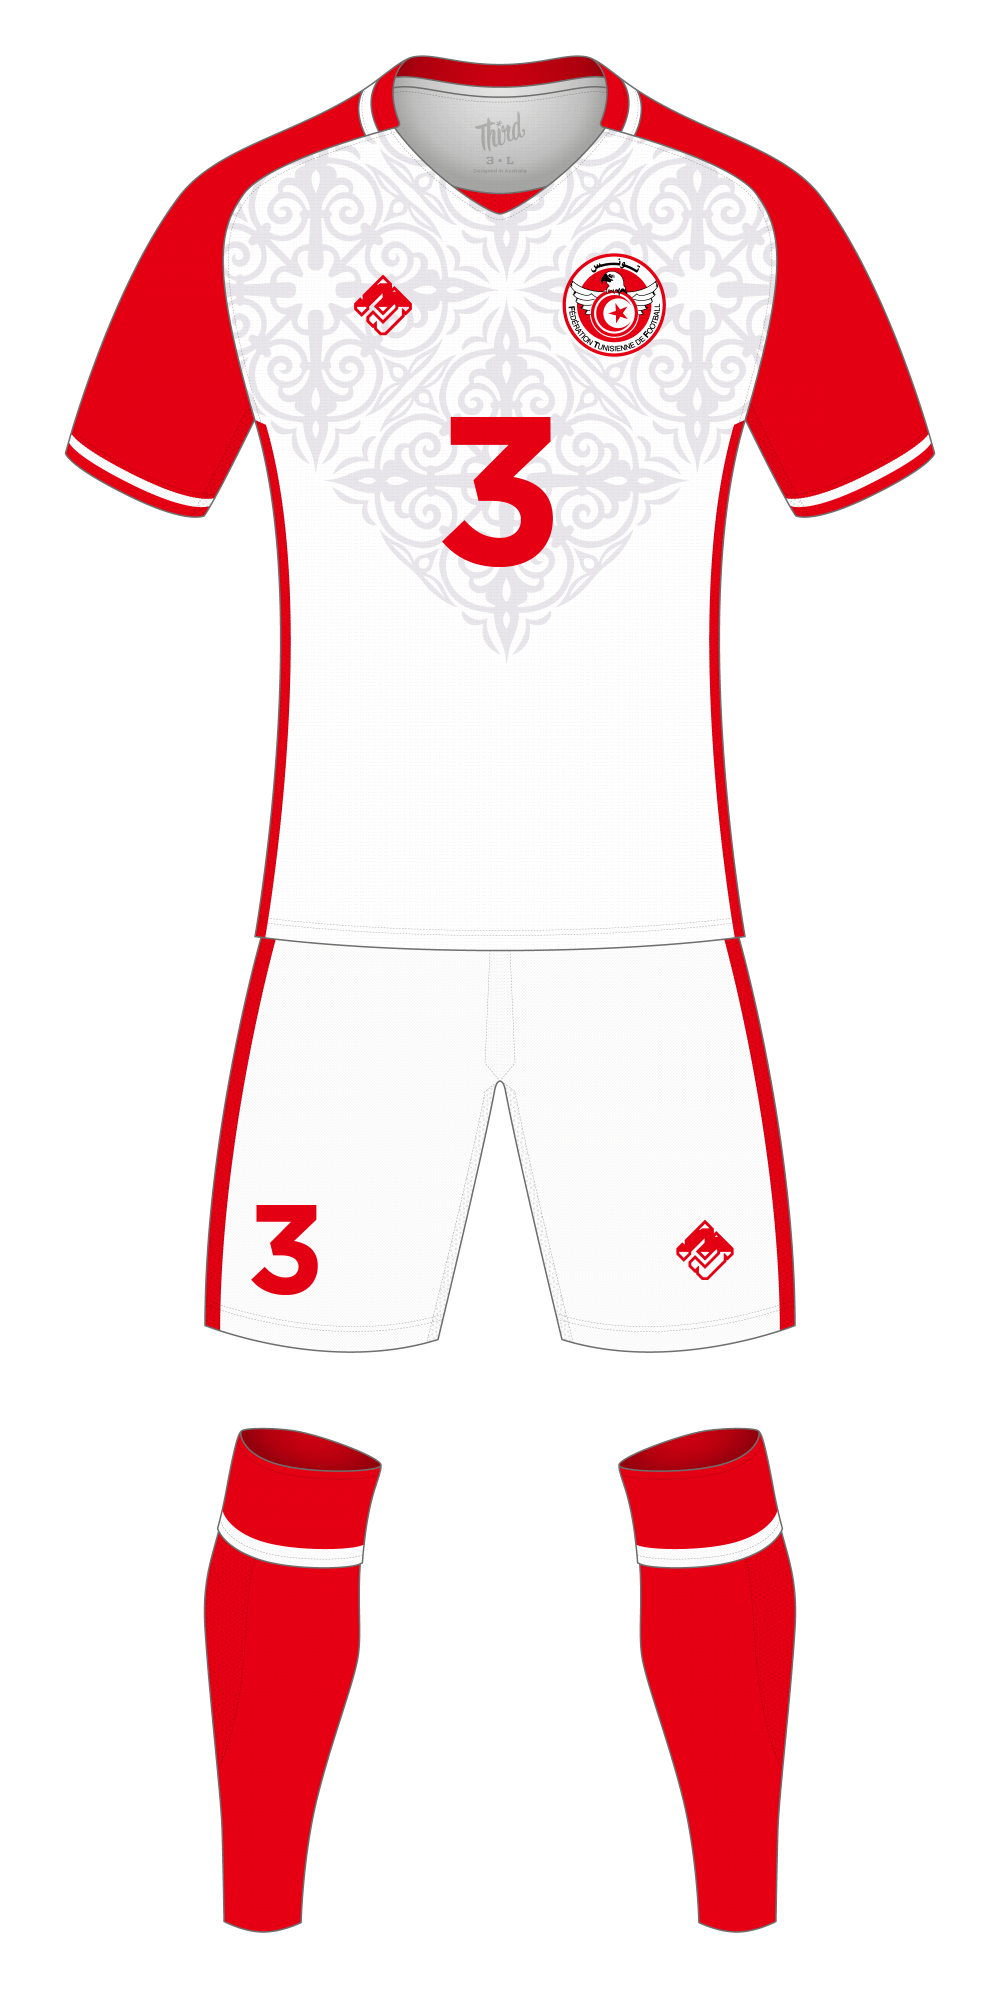 Tunisia World Cup 2018 concept